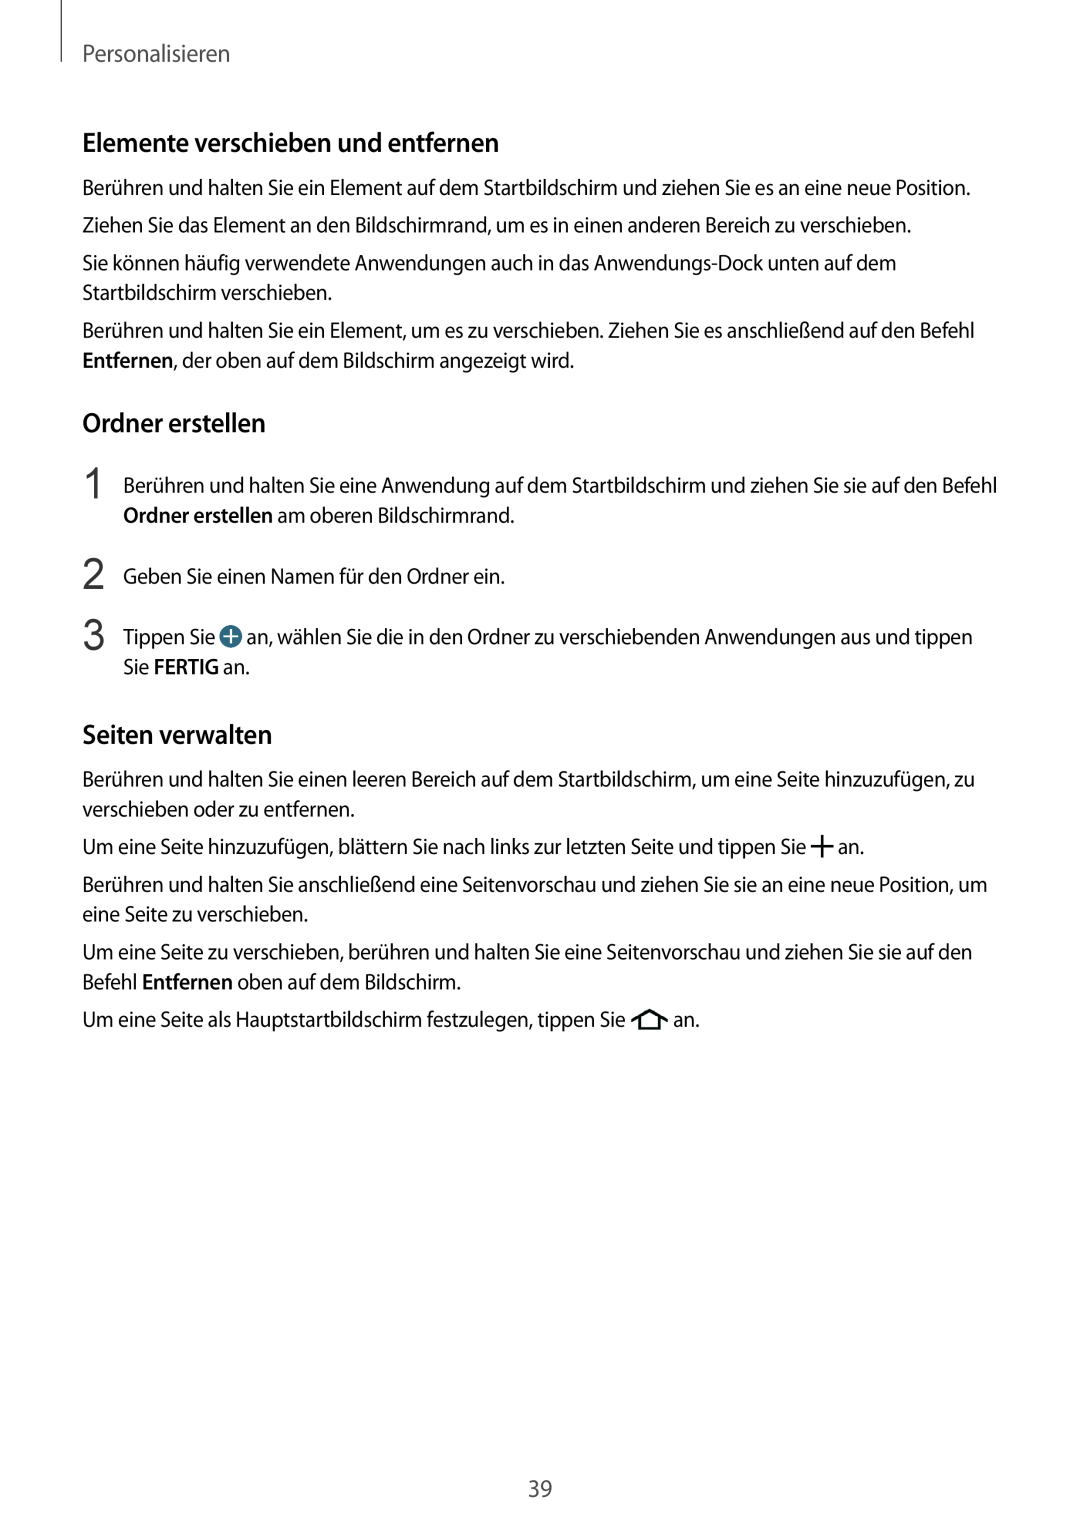 Samsung SM-G901FZKAVD2 manual Elemente verschieben und entfernen, Ordner erstellen, Seiten verwalten, Personalisieren 